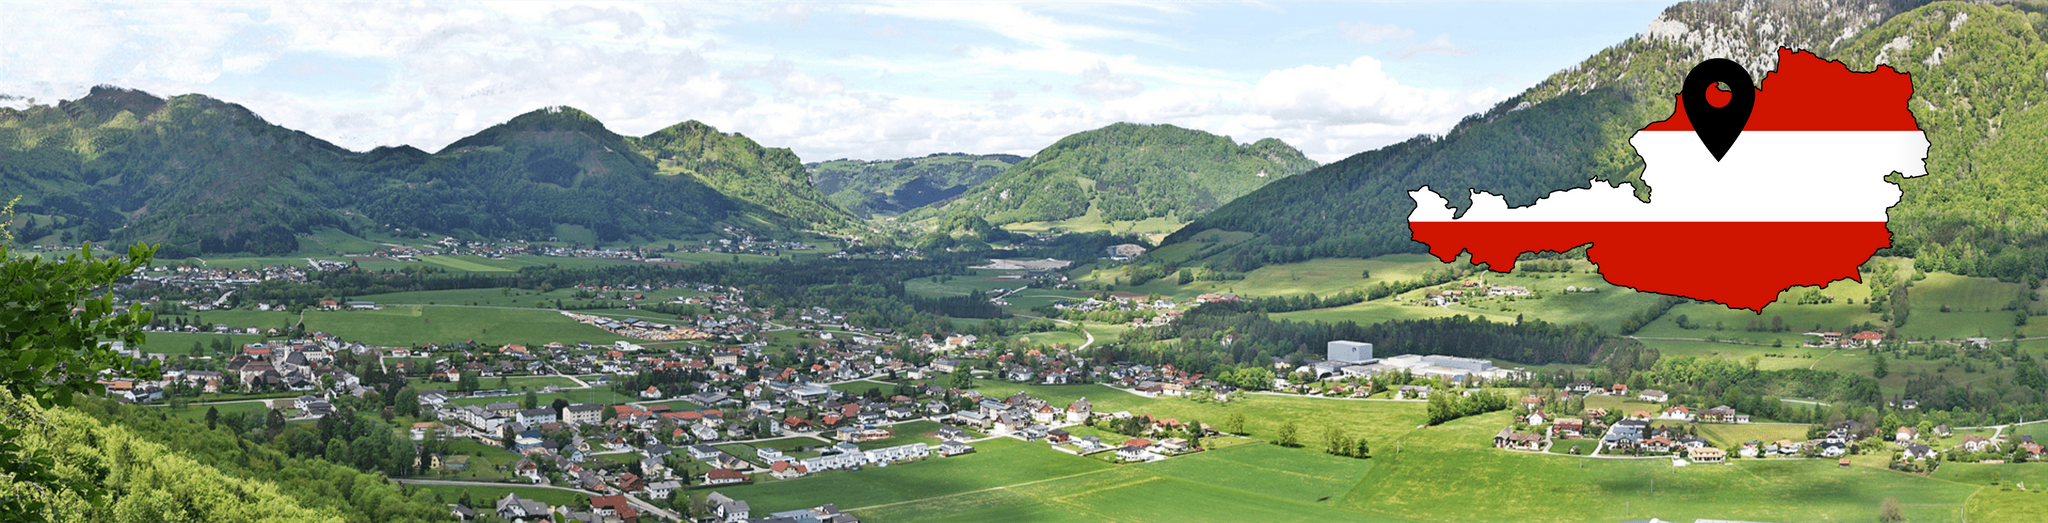 Panoramaansicht der Stadt Molln in Oberösterreich mit Bergen im Hintergrund. Rechts im Bild ist eine kleine Fahne in Form des Landes Österreich mit rot weiß roter Färbung und einem Pin, welcher auf die Koordinaten der Stadt zeigt.